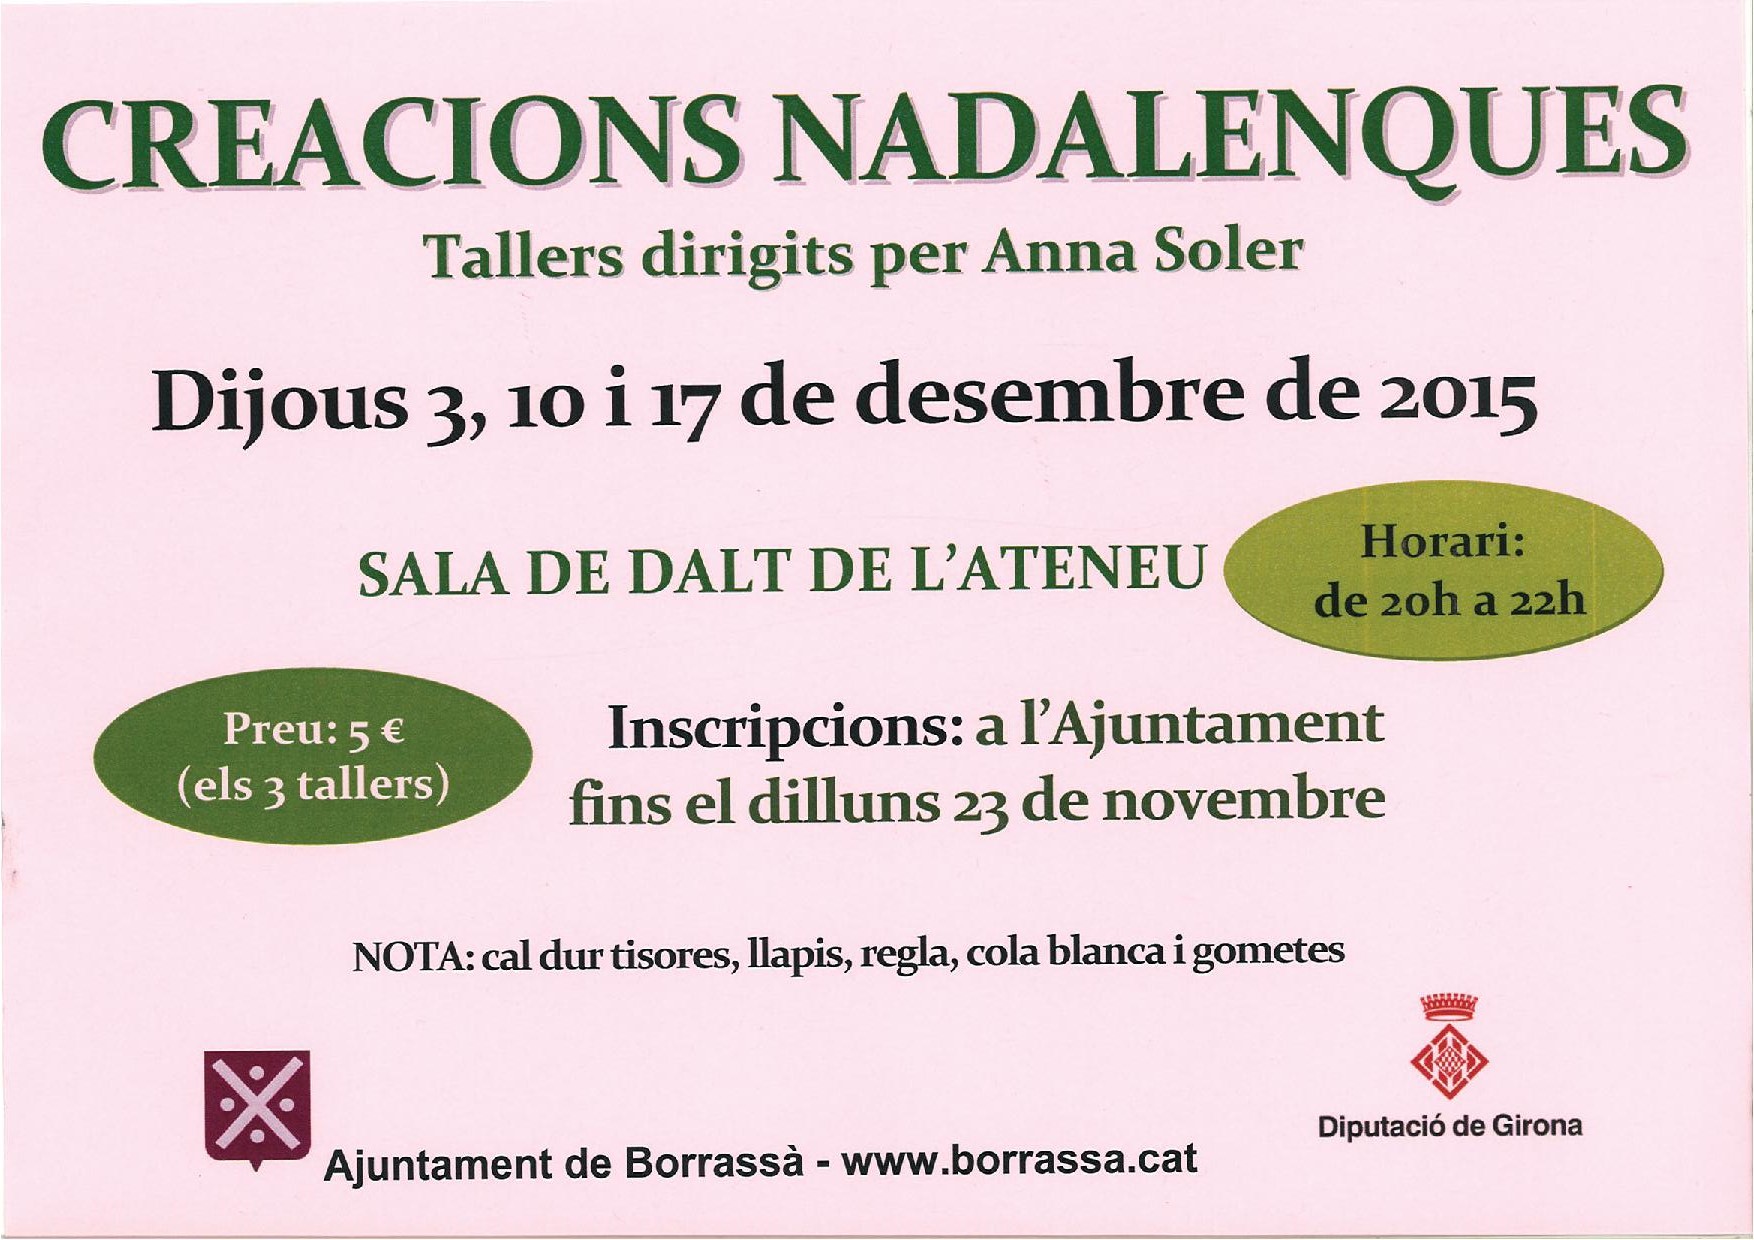 El mes de desembre es faran tres tallers de creacions nadalenques dirigits per Anna Soler. 